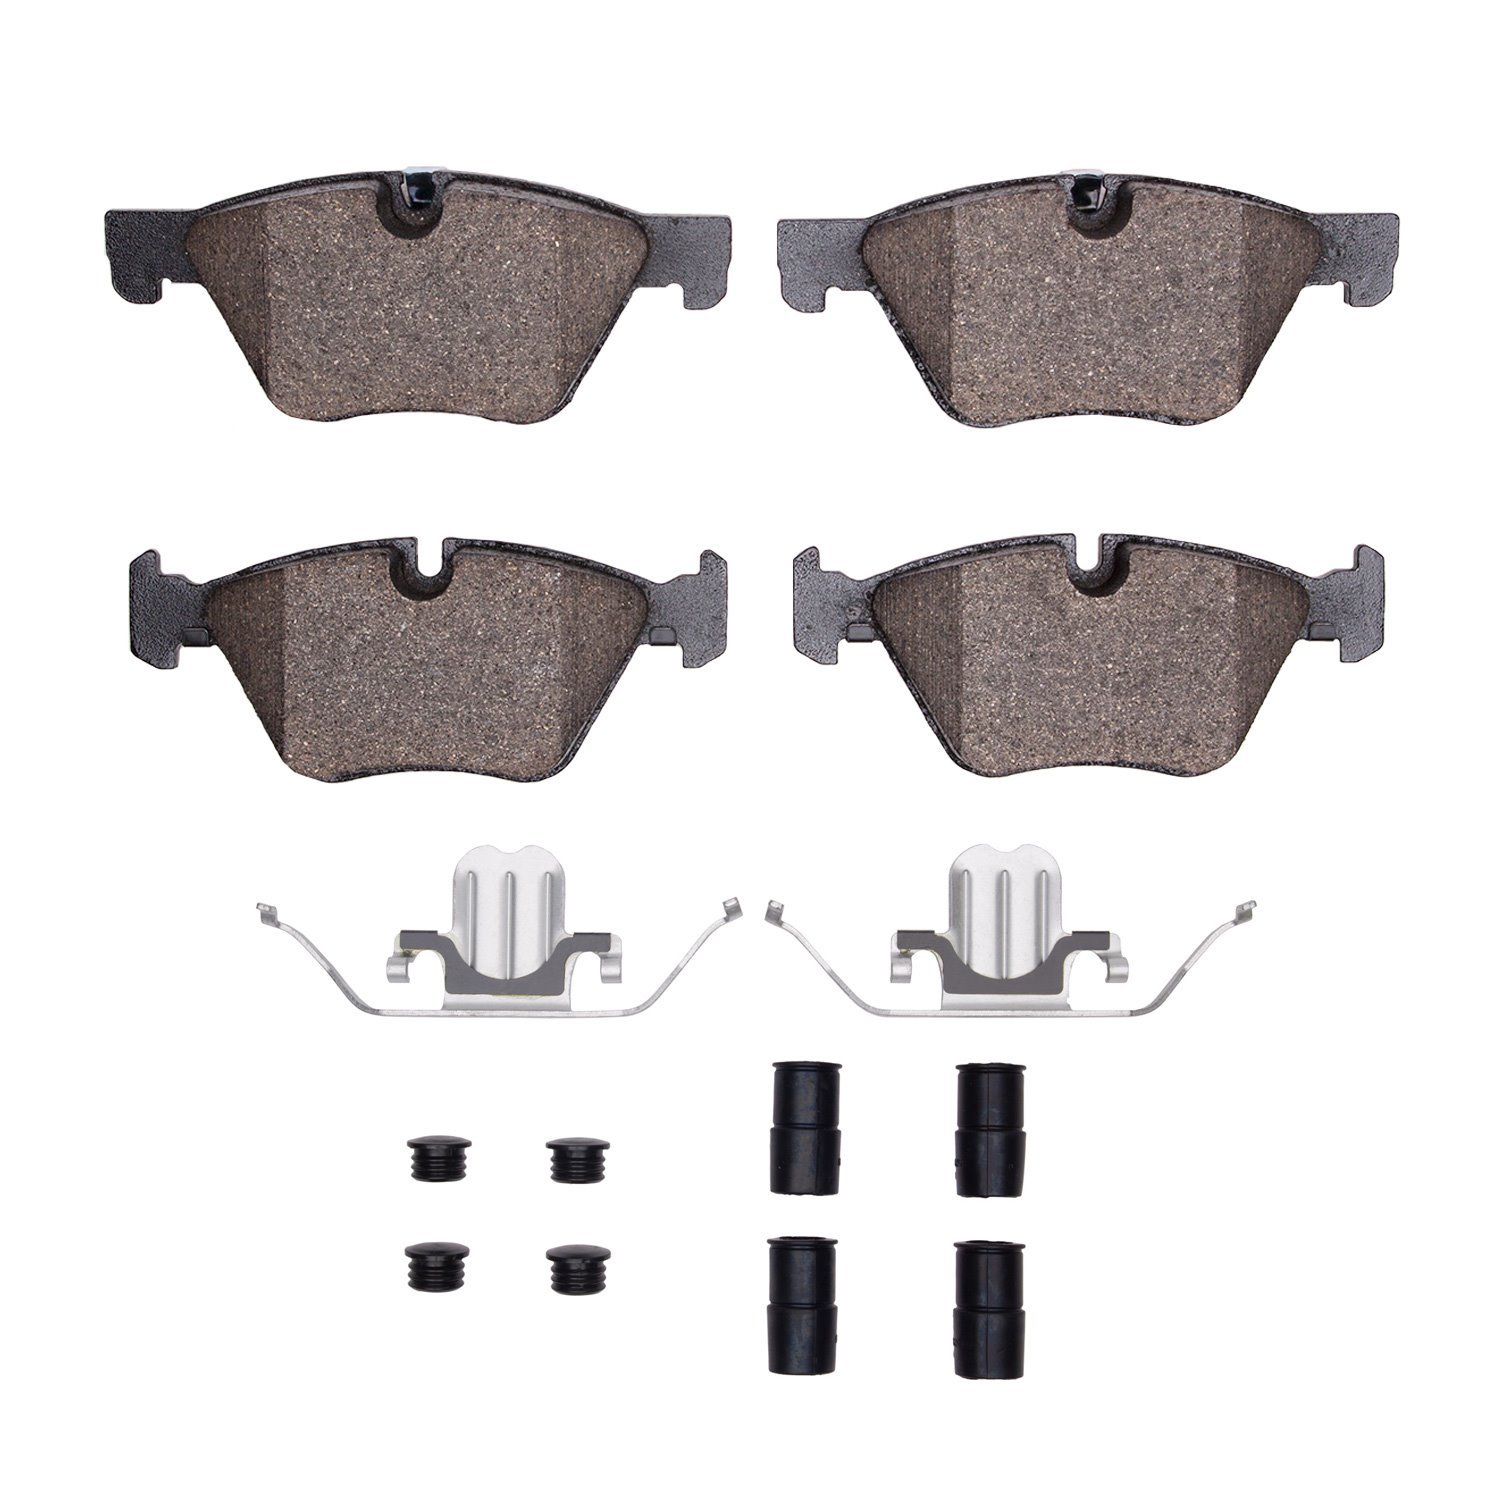 Semi-Metallic Brake Pads & Hardware Kit, 2011-2016 BMW, Position: Front